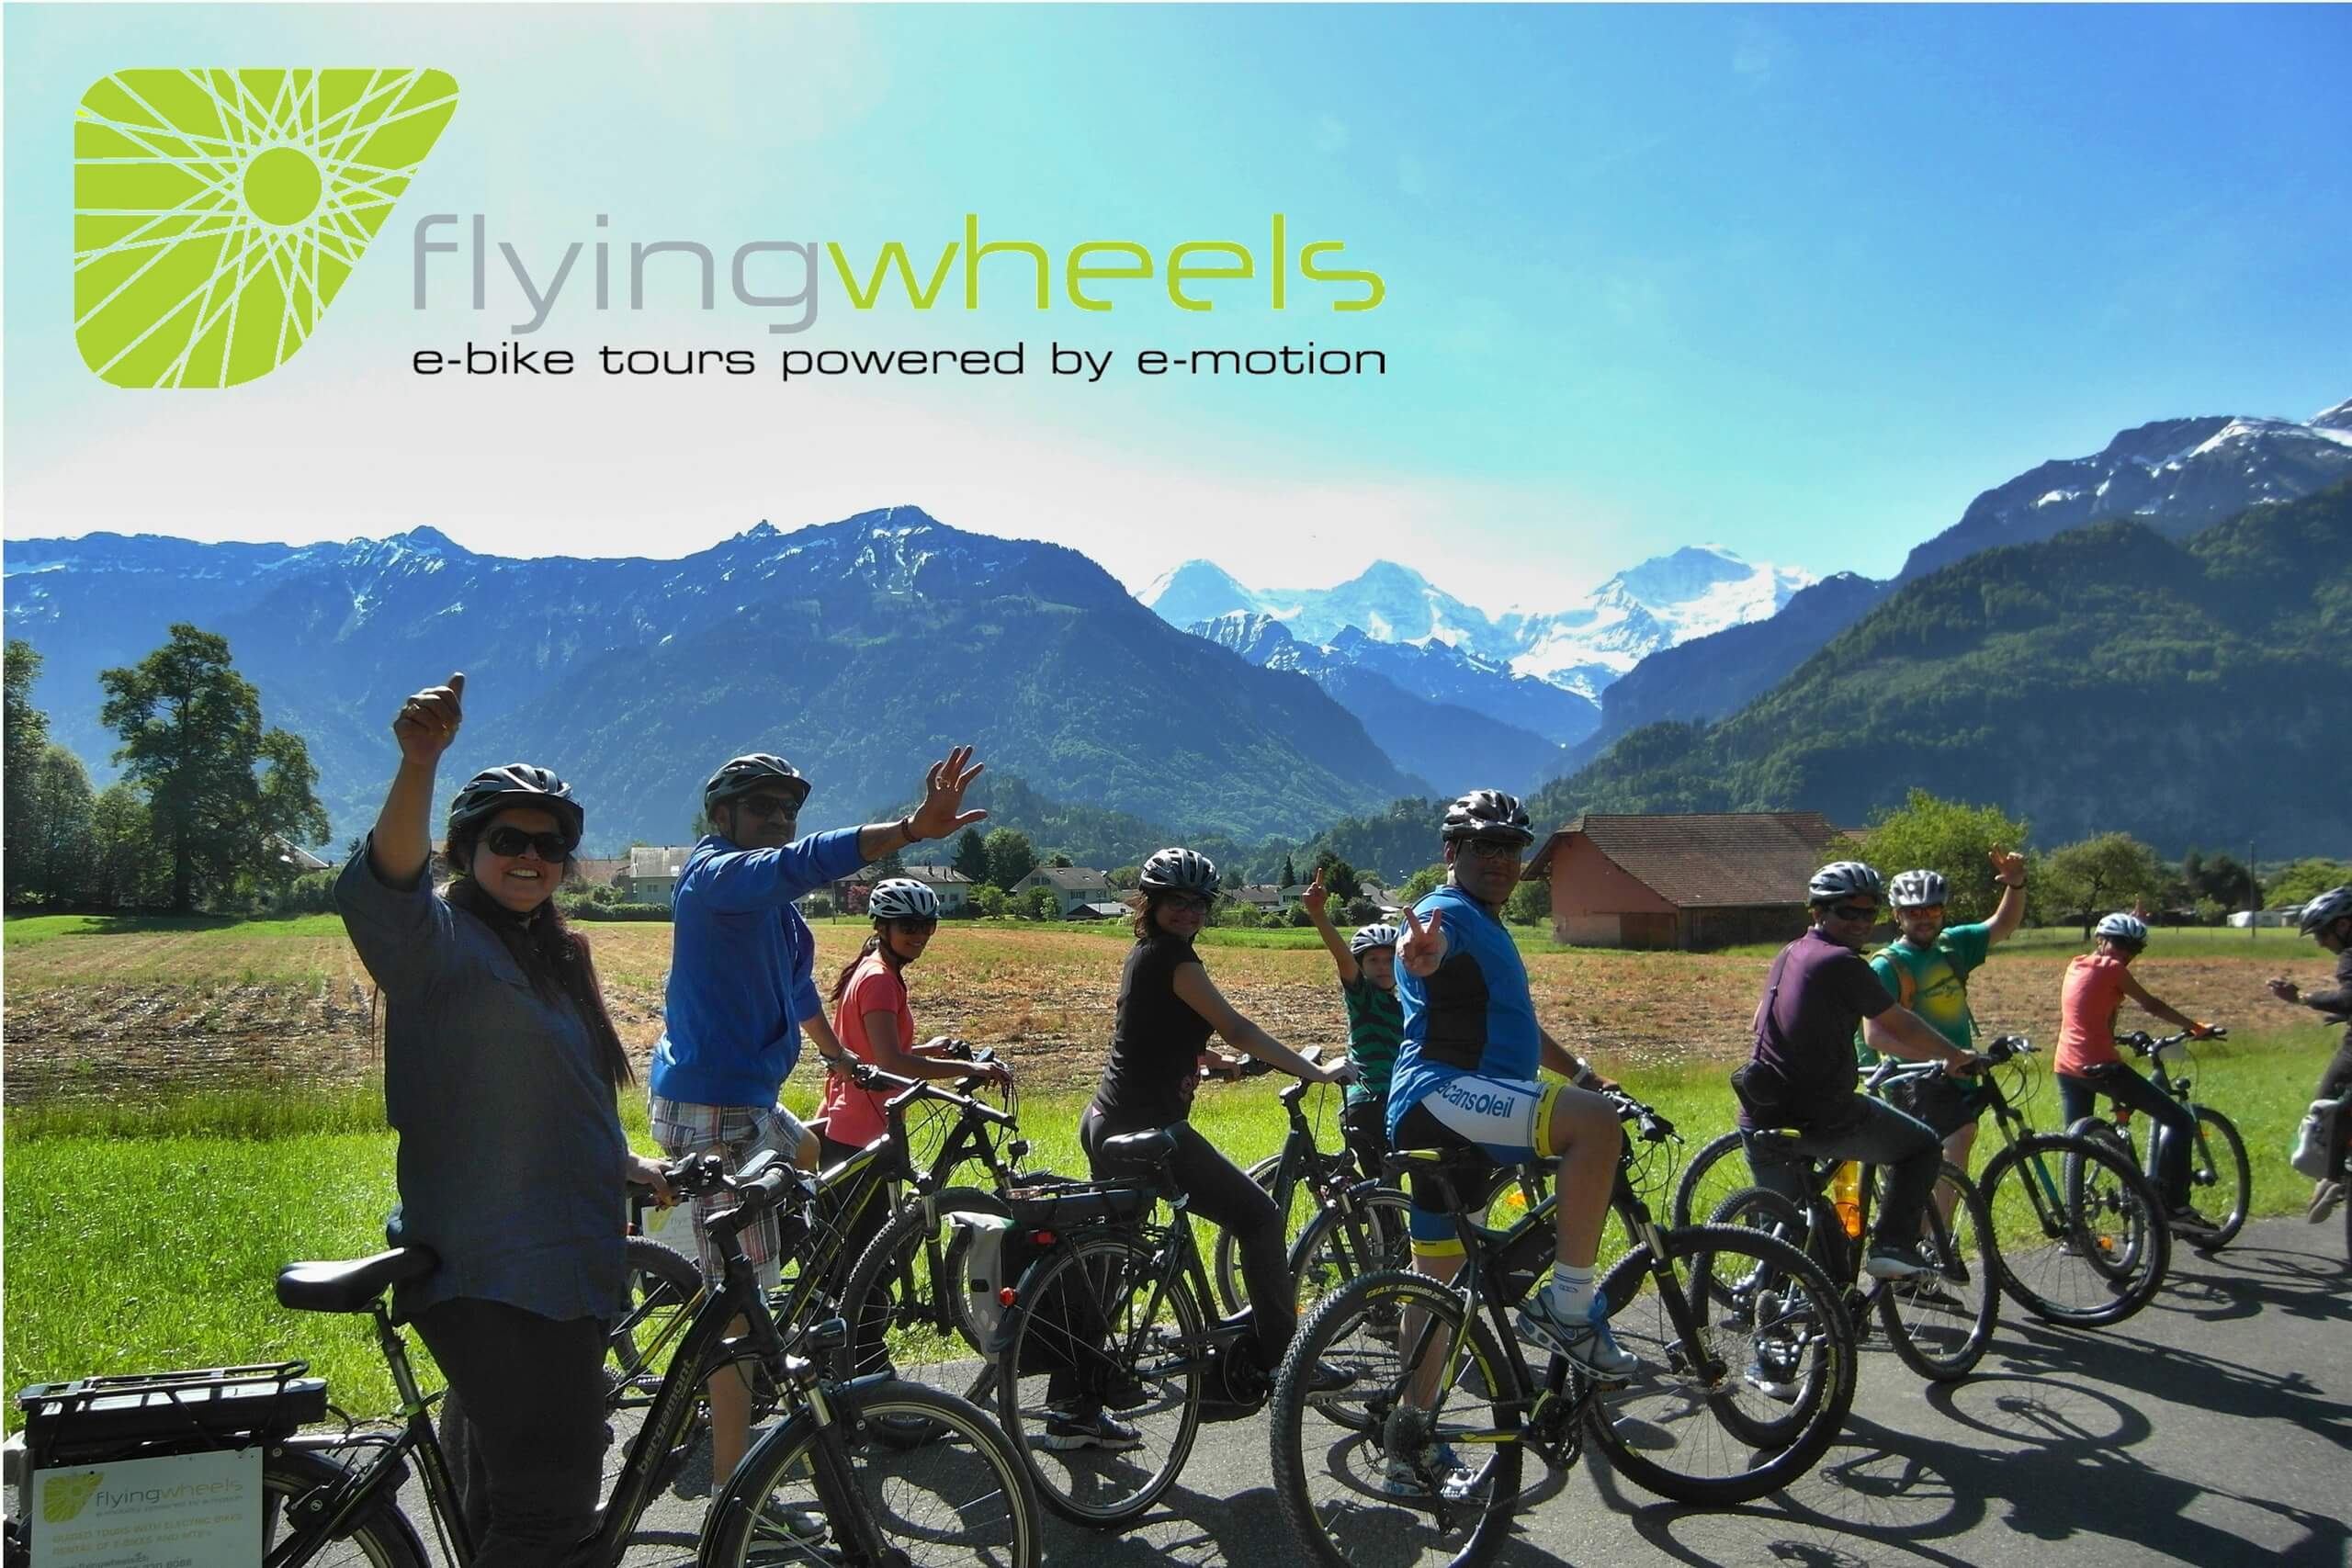 interlaken-flying-wheels-e-bikes-sommer